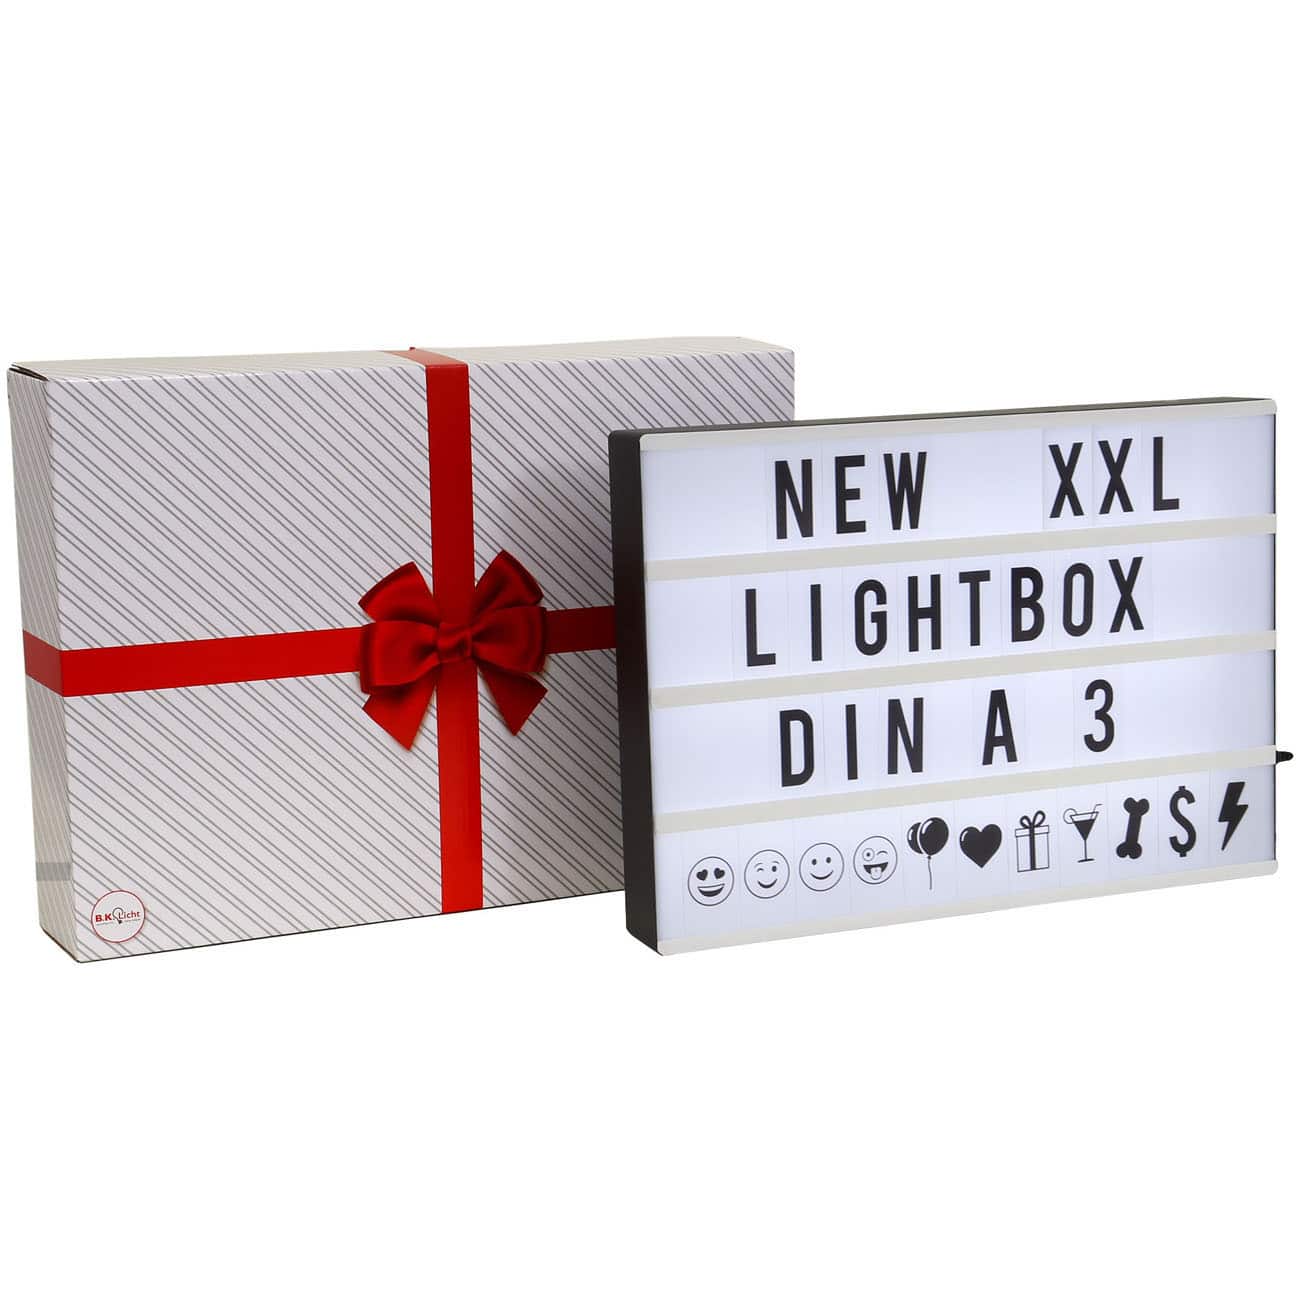 LED Lichtbox mit 120 Buchstaben - DIN A3 - Lightbox 42x30x5,6cm inkl USB-Kabel 5V Ein-/Aus-Schalter 4W kaltweißes Licht | schwarz - 3